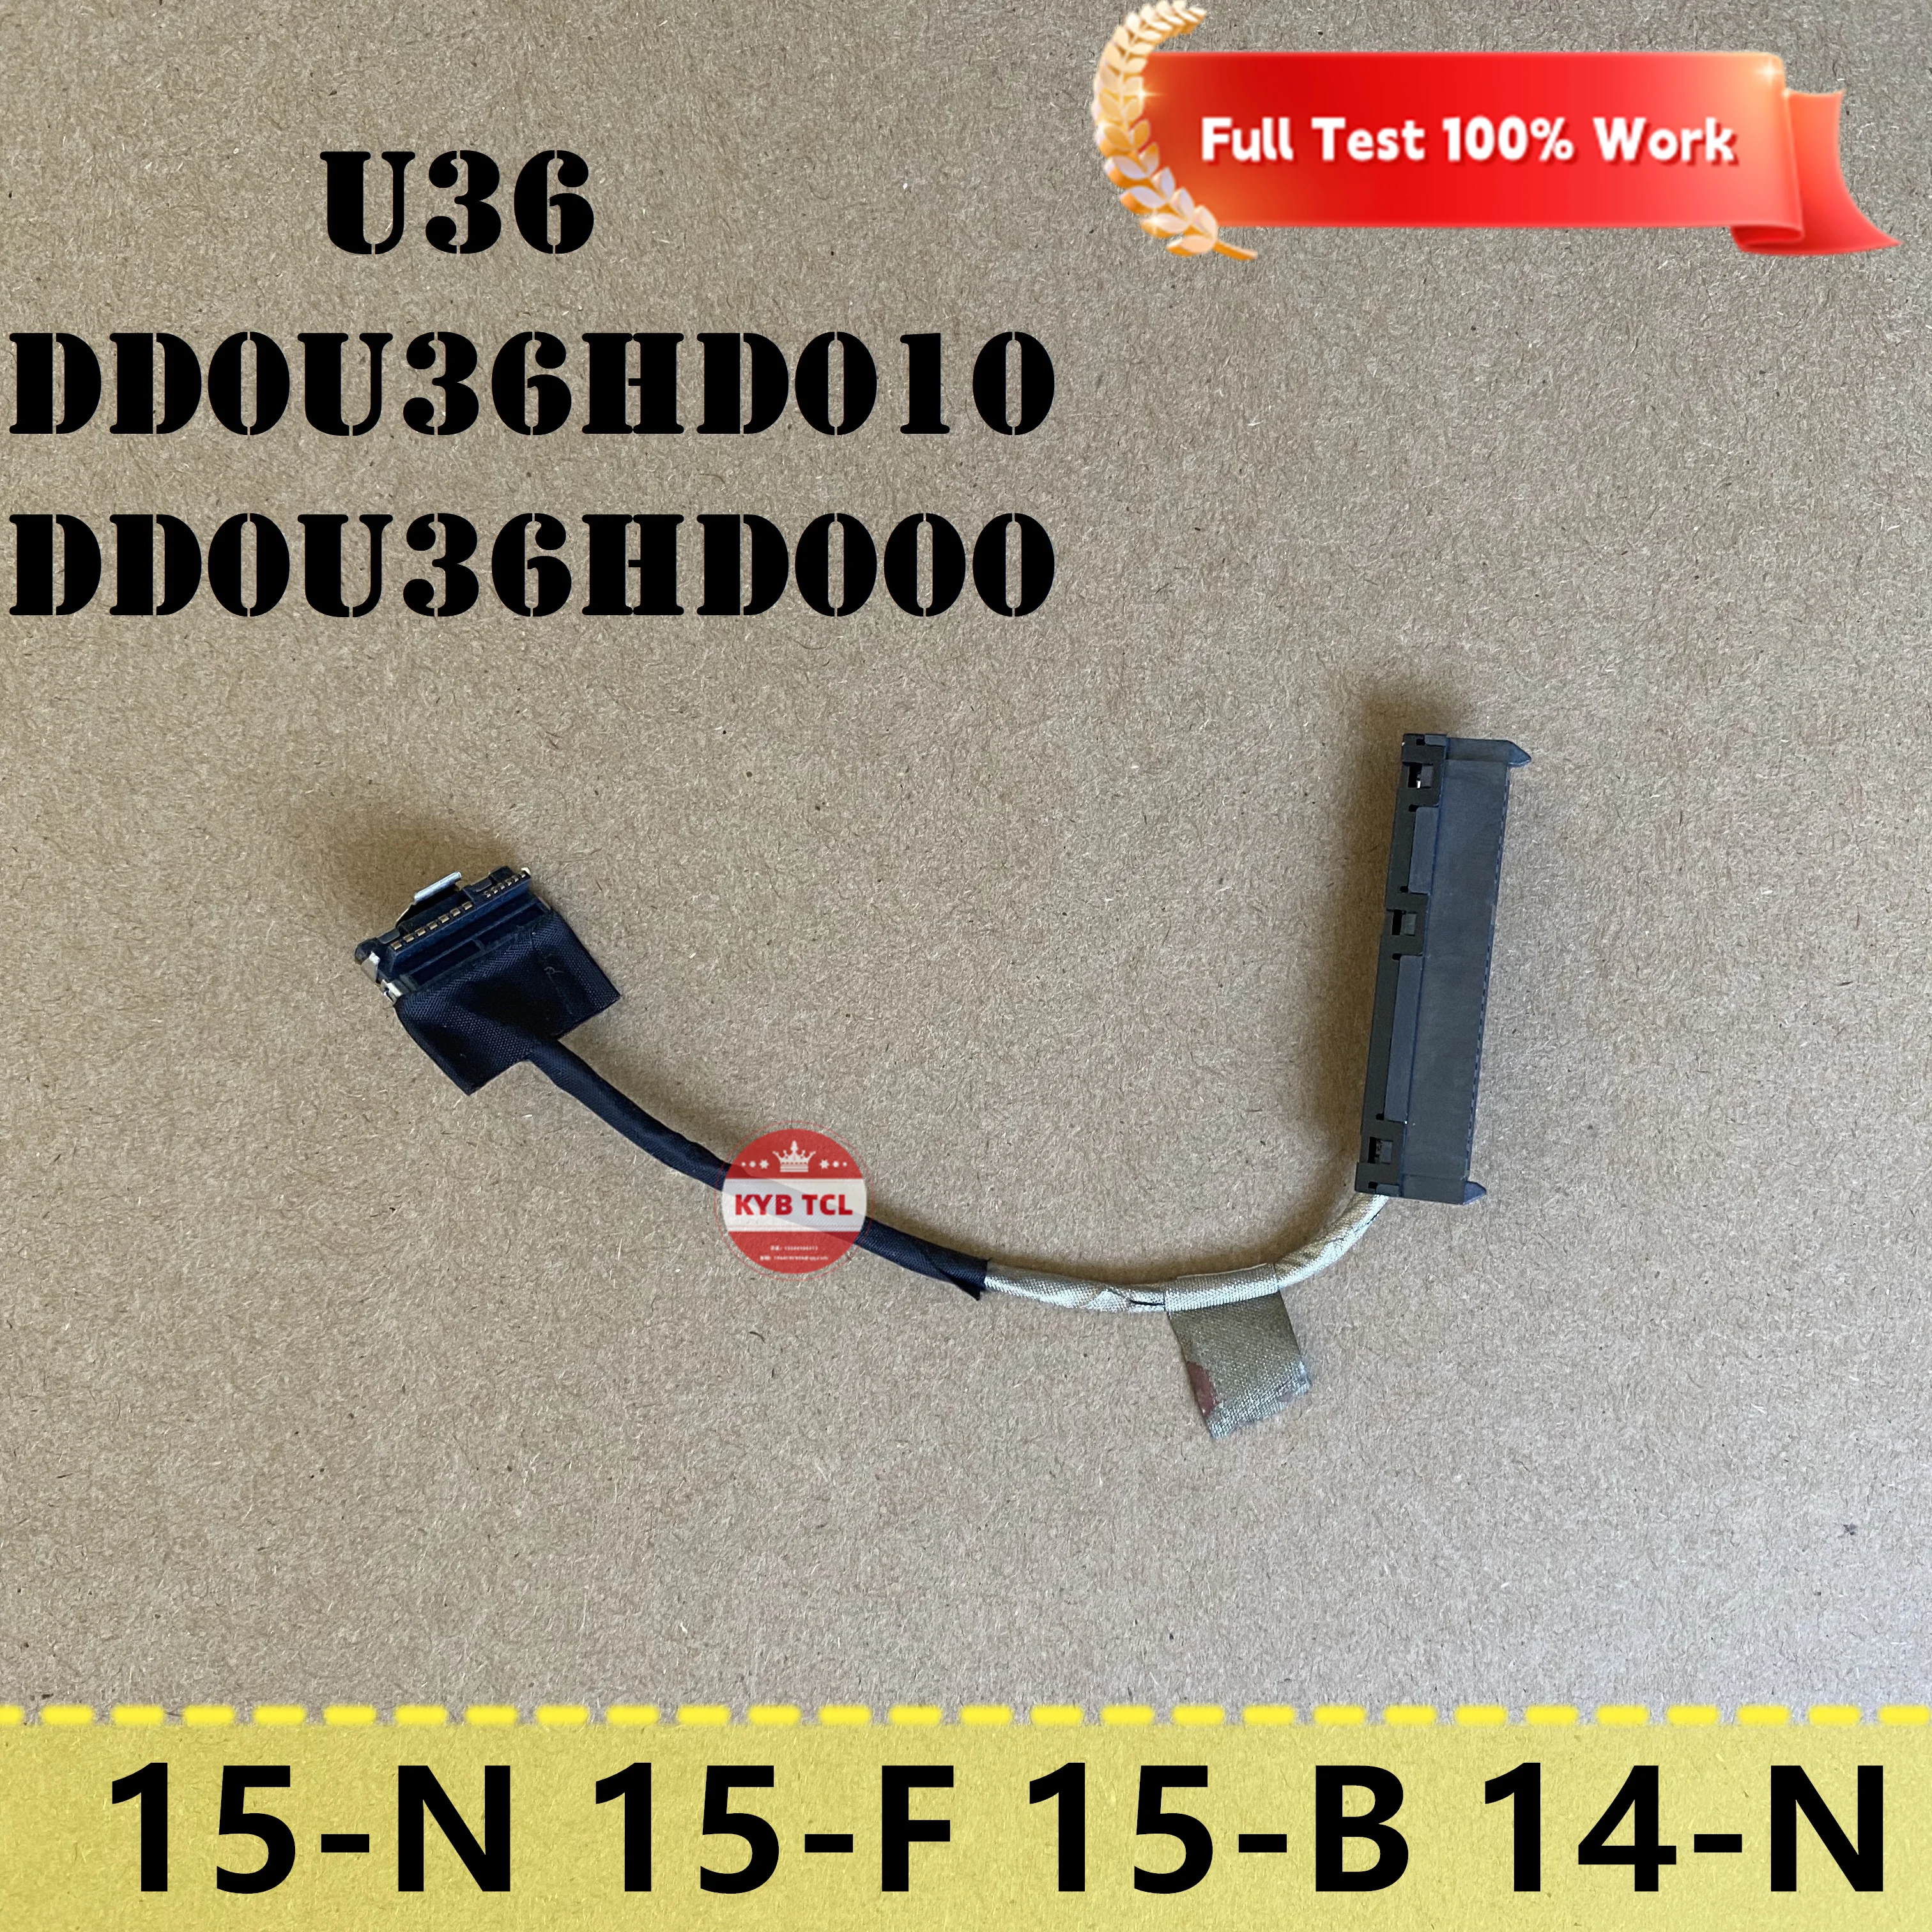 

Соединительный кабель для жесткого диска ноутбука HP Pavilion 15-F 15-B 15-N 14-N 15-F010DX 15-F019DX DD0U36HD010 DD0U36HD000 U36 SATA HDD